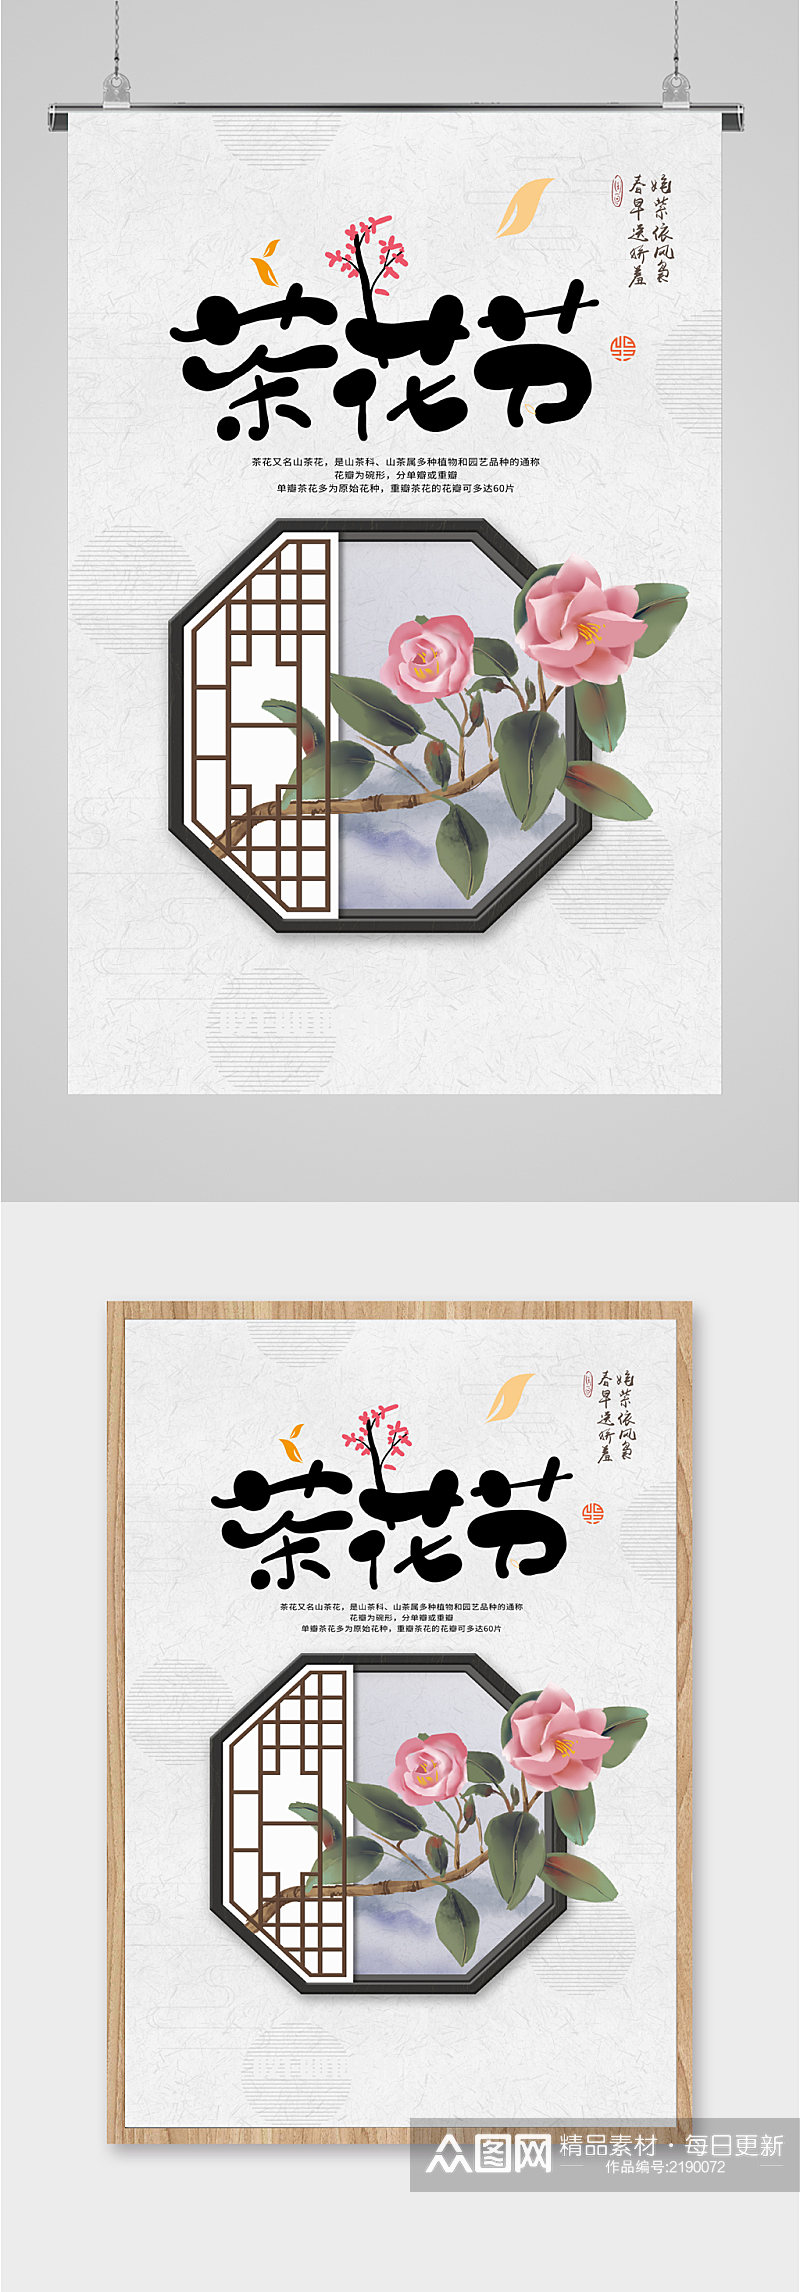 山茶花茶花节节日旅游海报素材